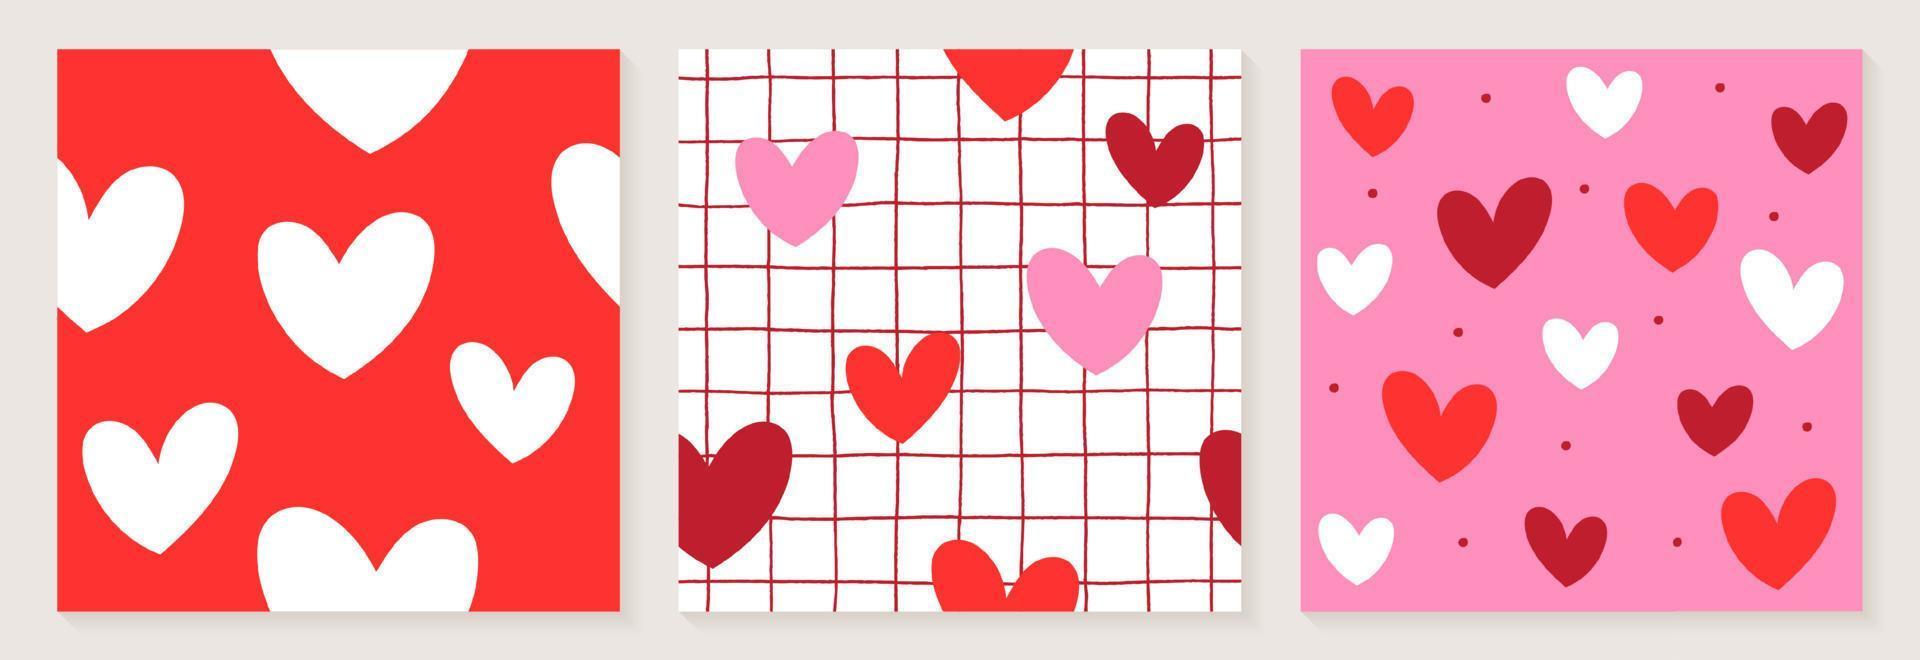 schattig hart valentines liefde wit rood roze kleur confetti vlakke stijl stof textiel raster lijn controleren naadloze patroon achtergrond zomer lente wenskaart set collectie bundel vectorillustratie vector